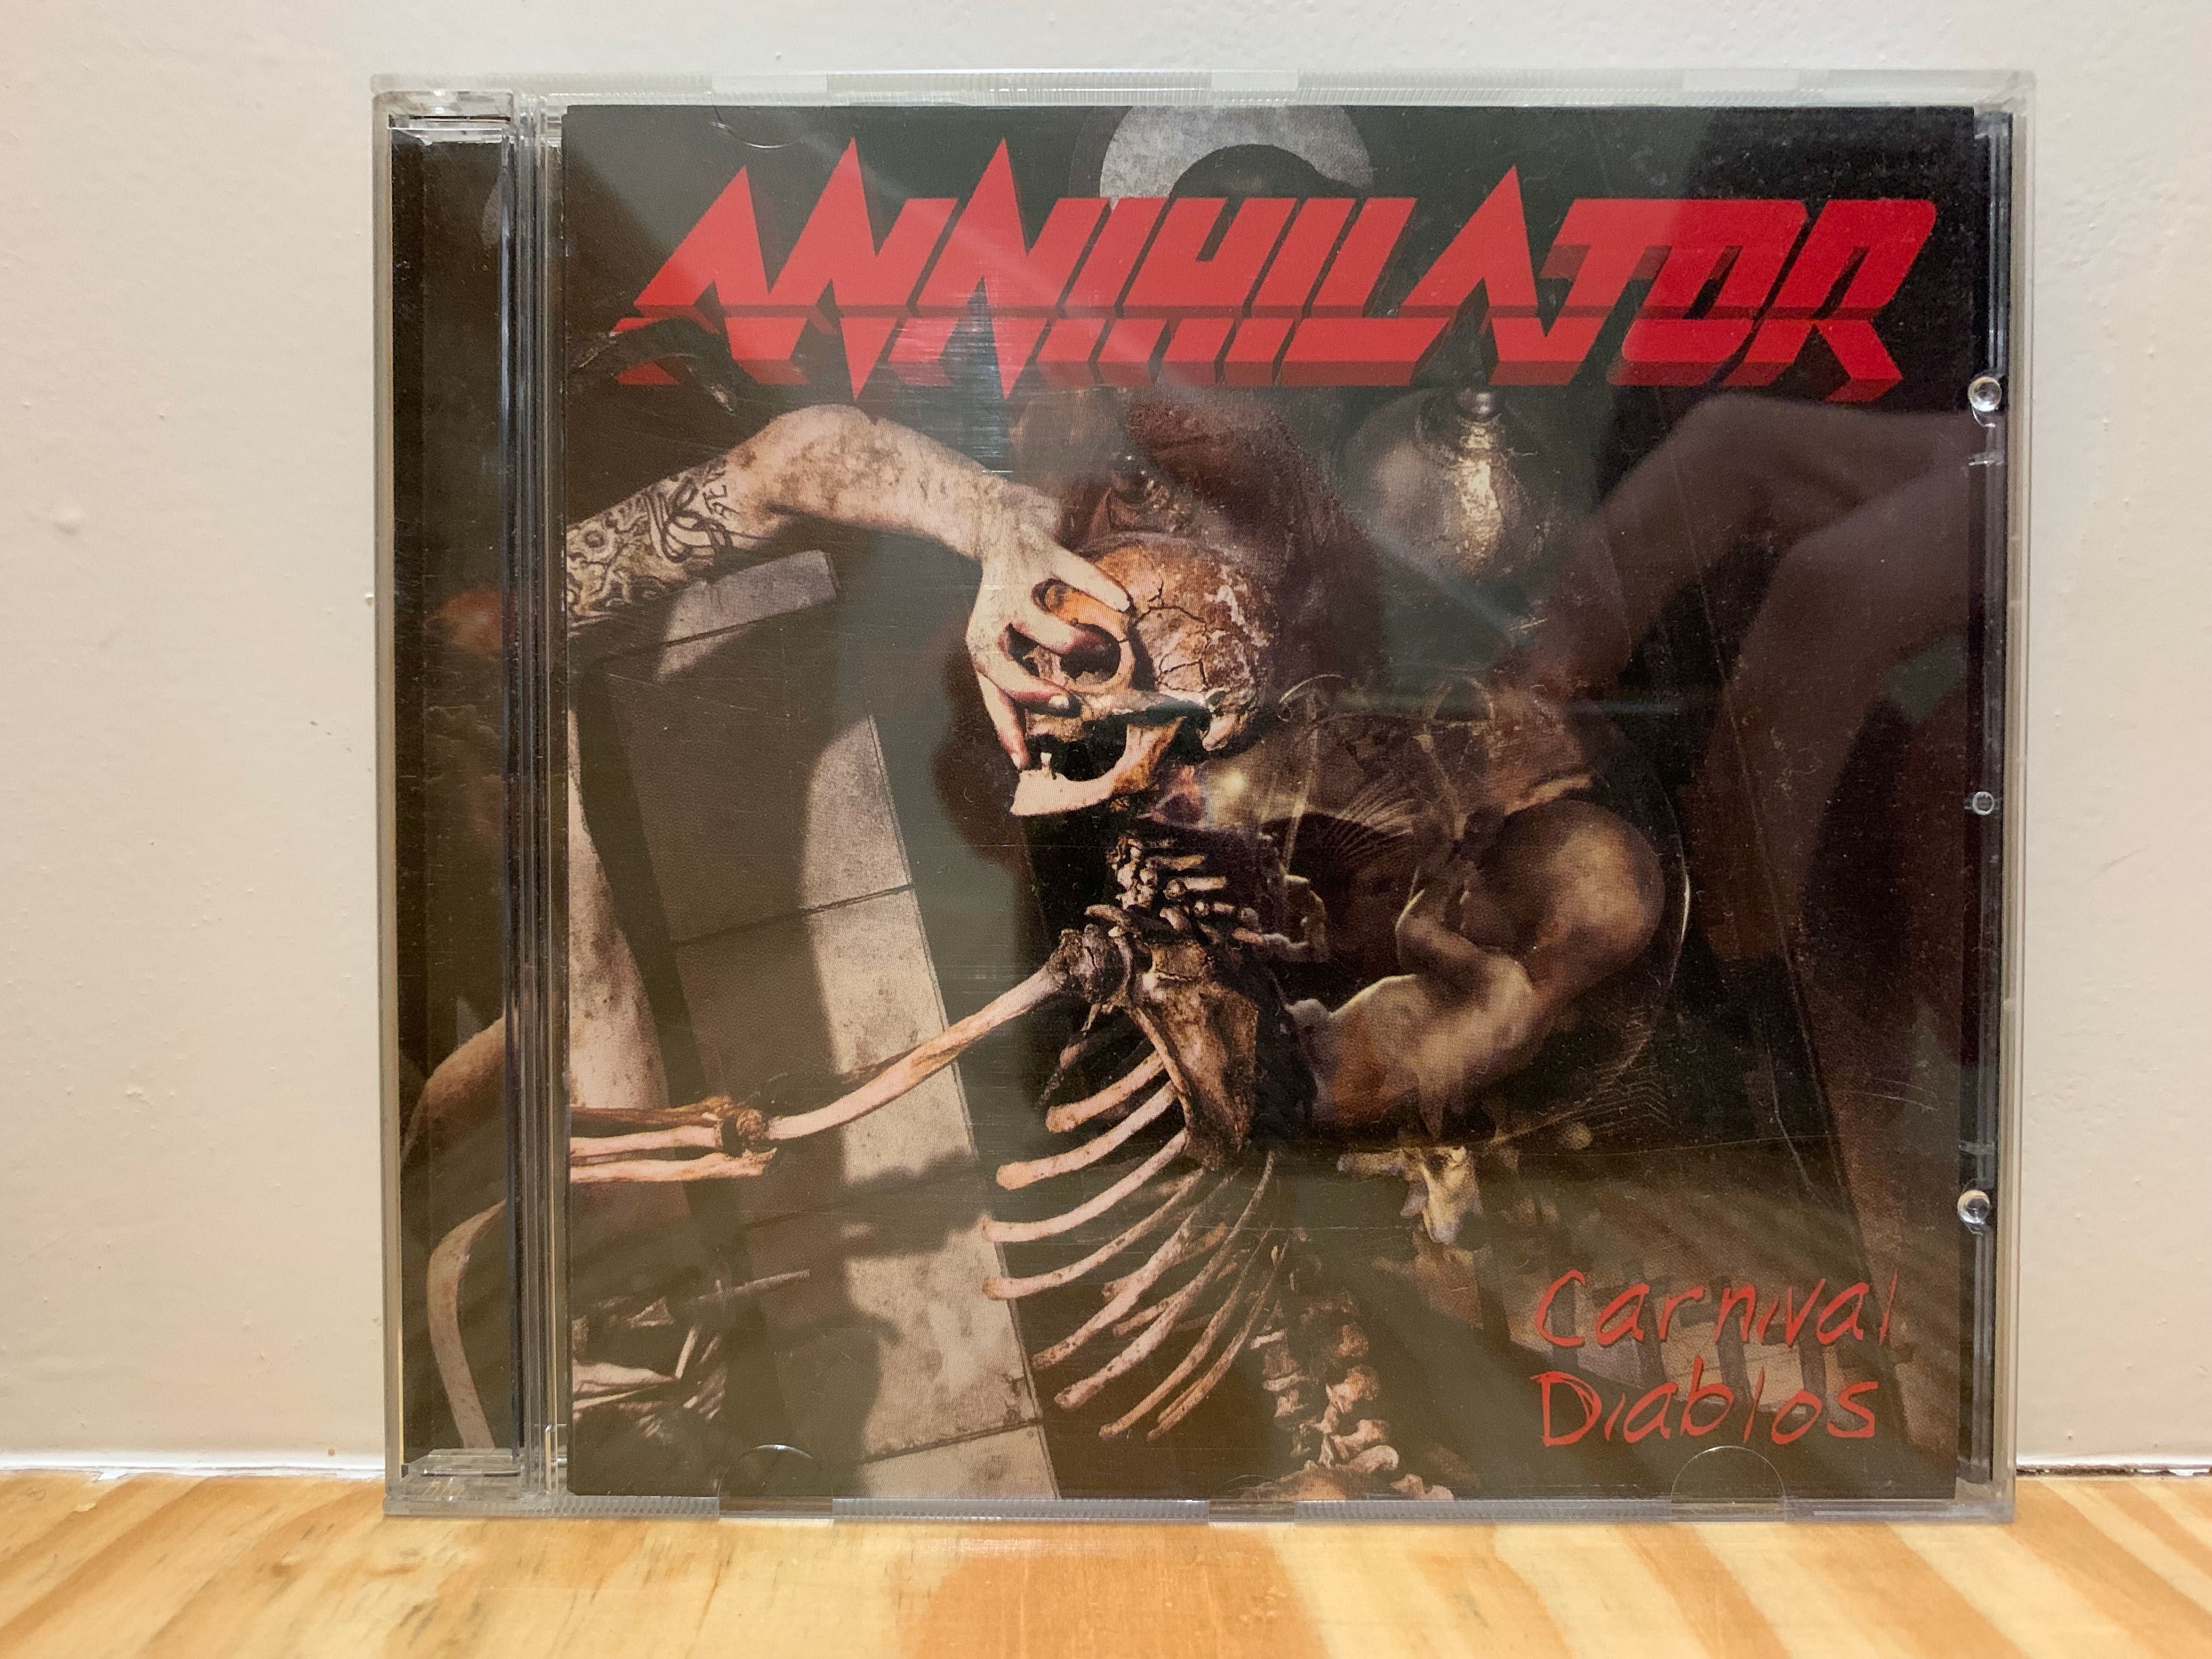 Annihilator - Carnival Diablos (CD)